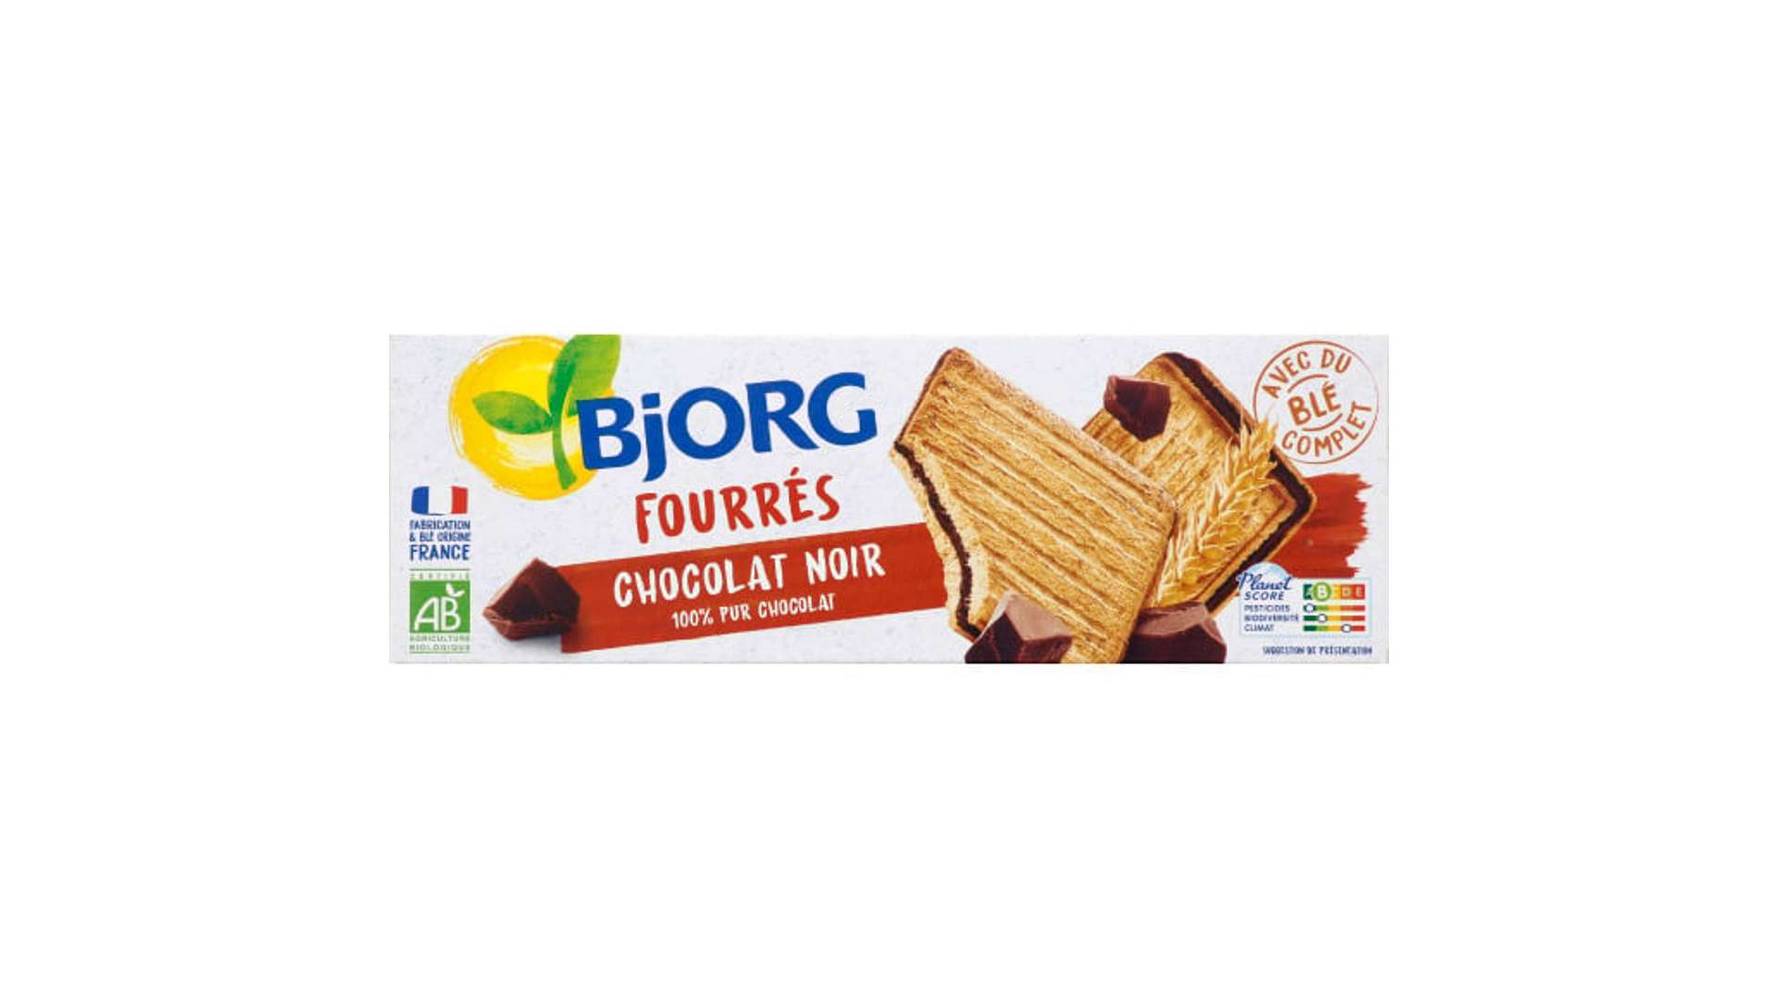 Bjorg - Biscuits fourrés chocolat noir bio